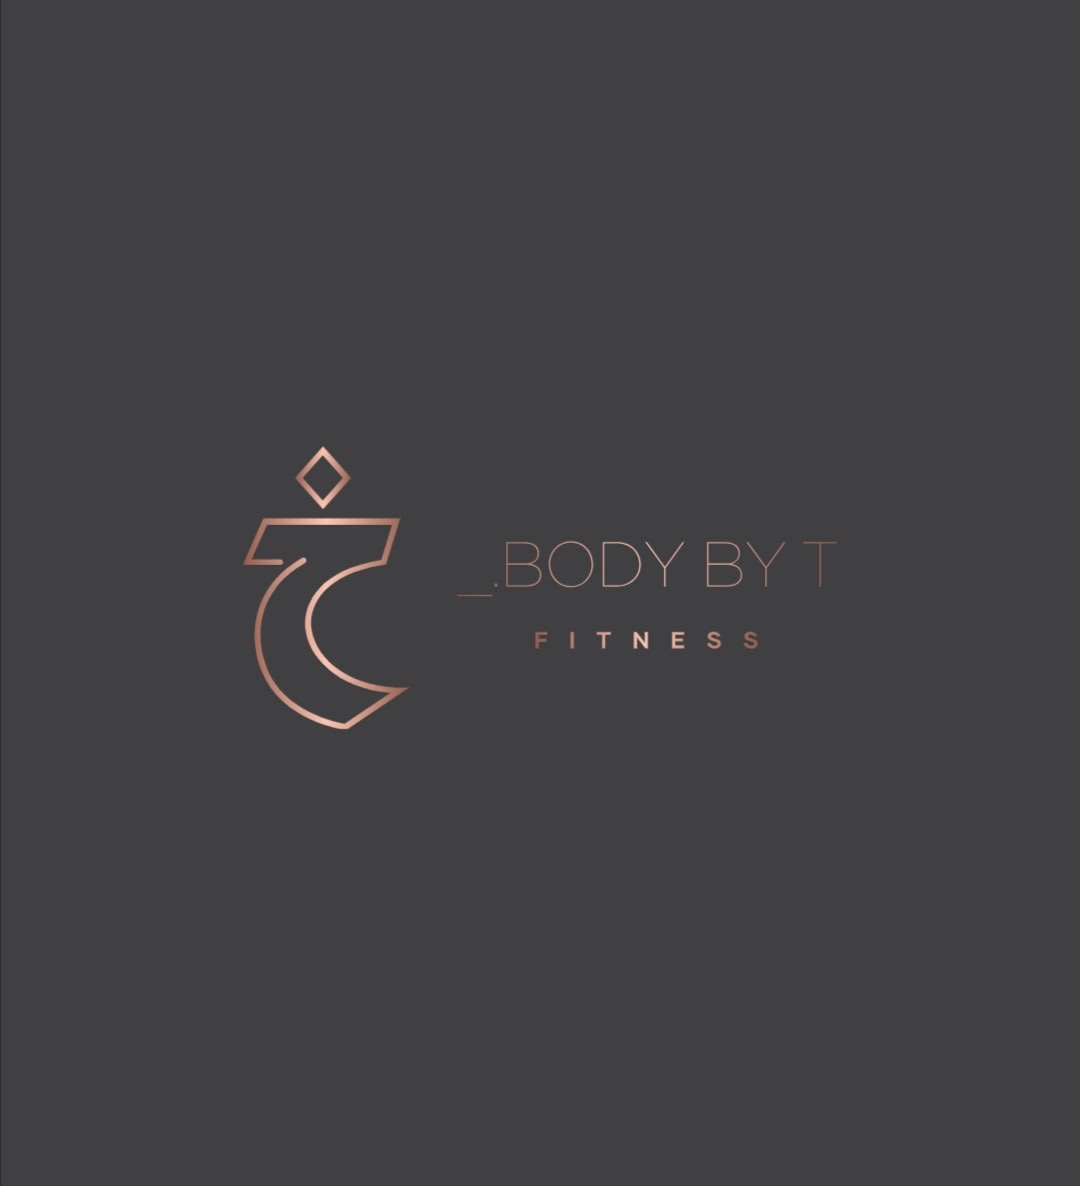 Body By T